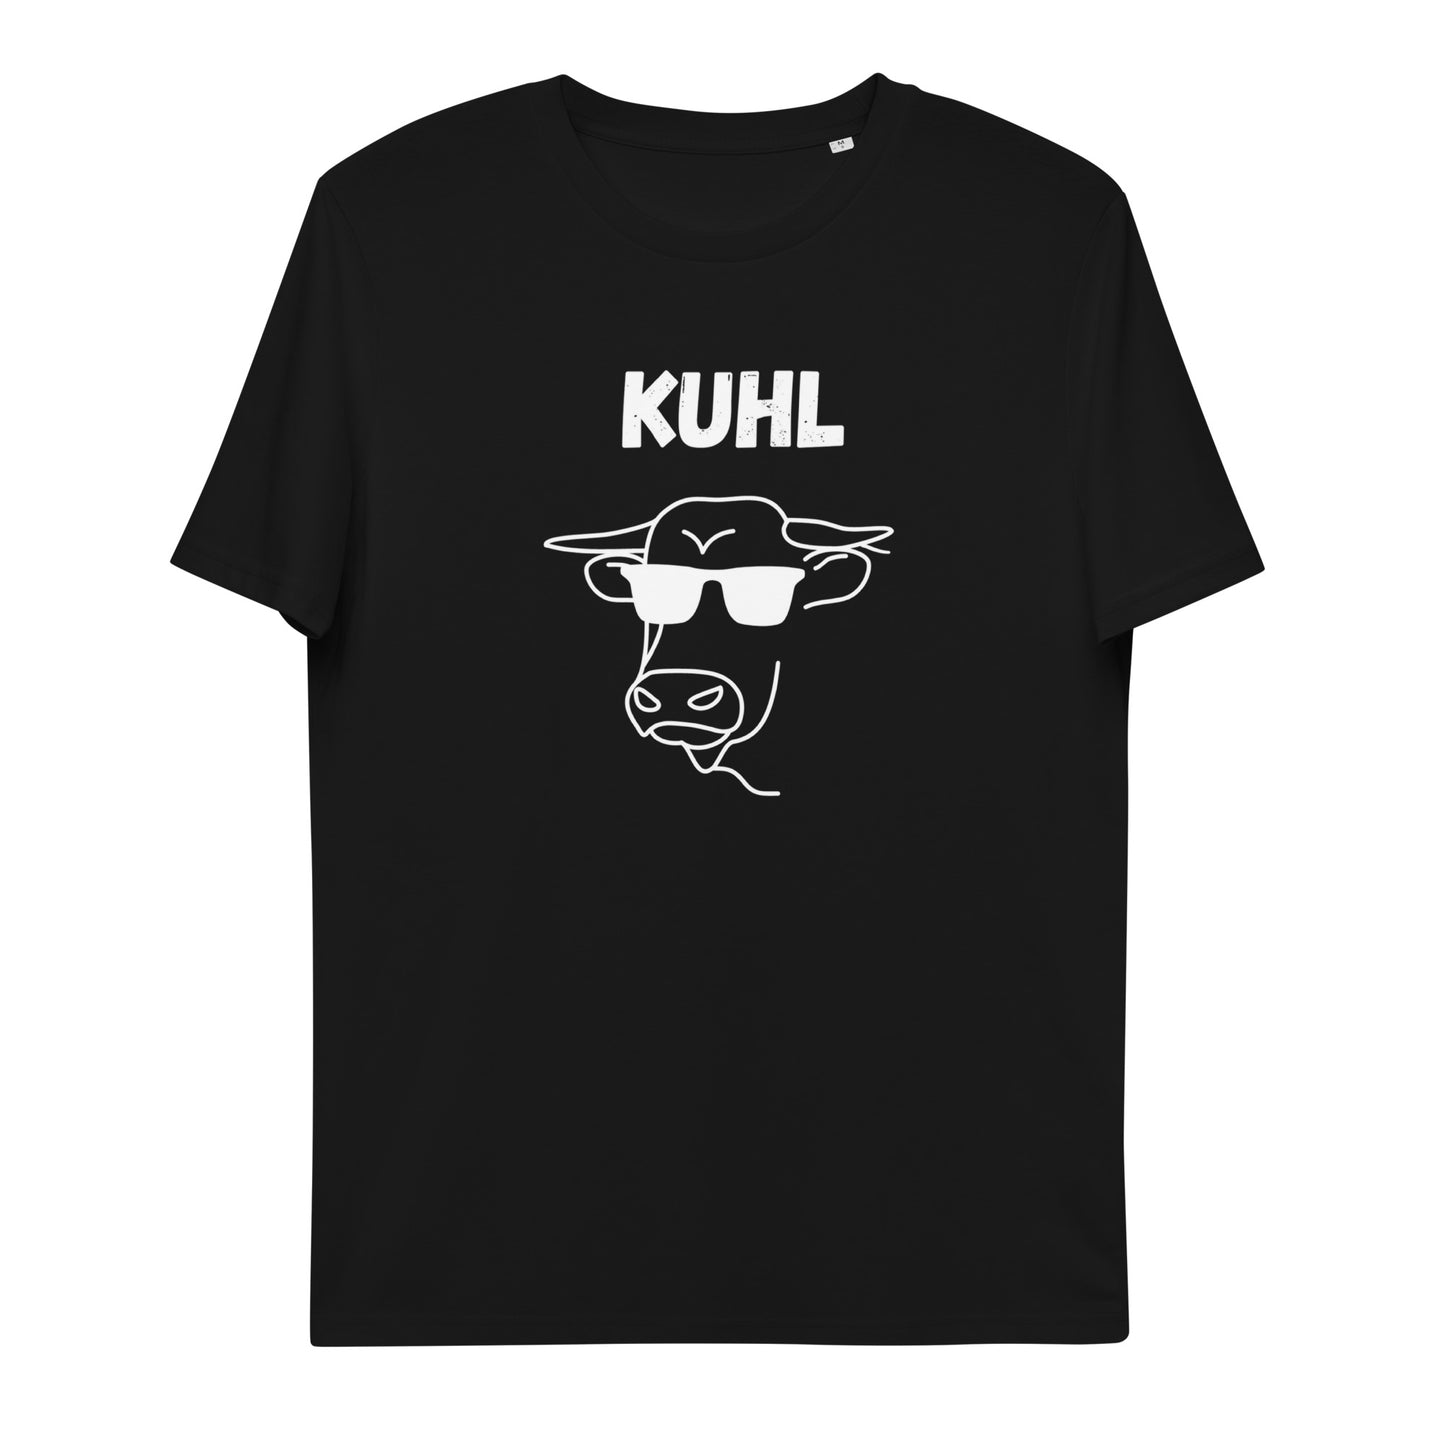 Kuhl - Unisex T-Shirt